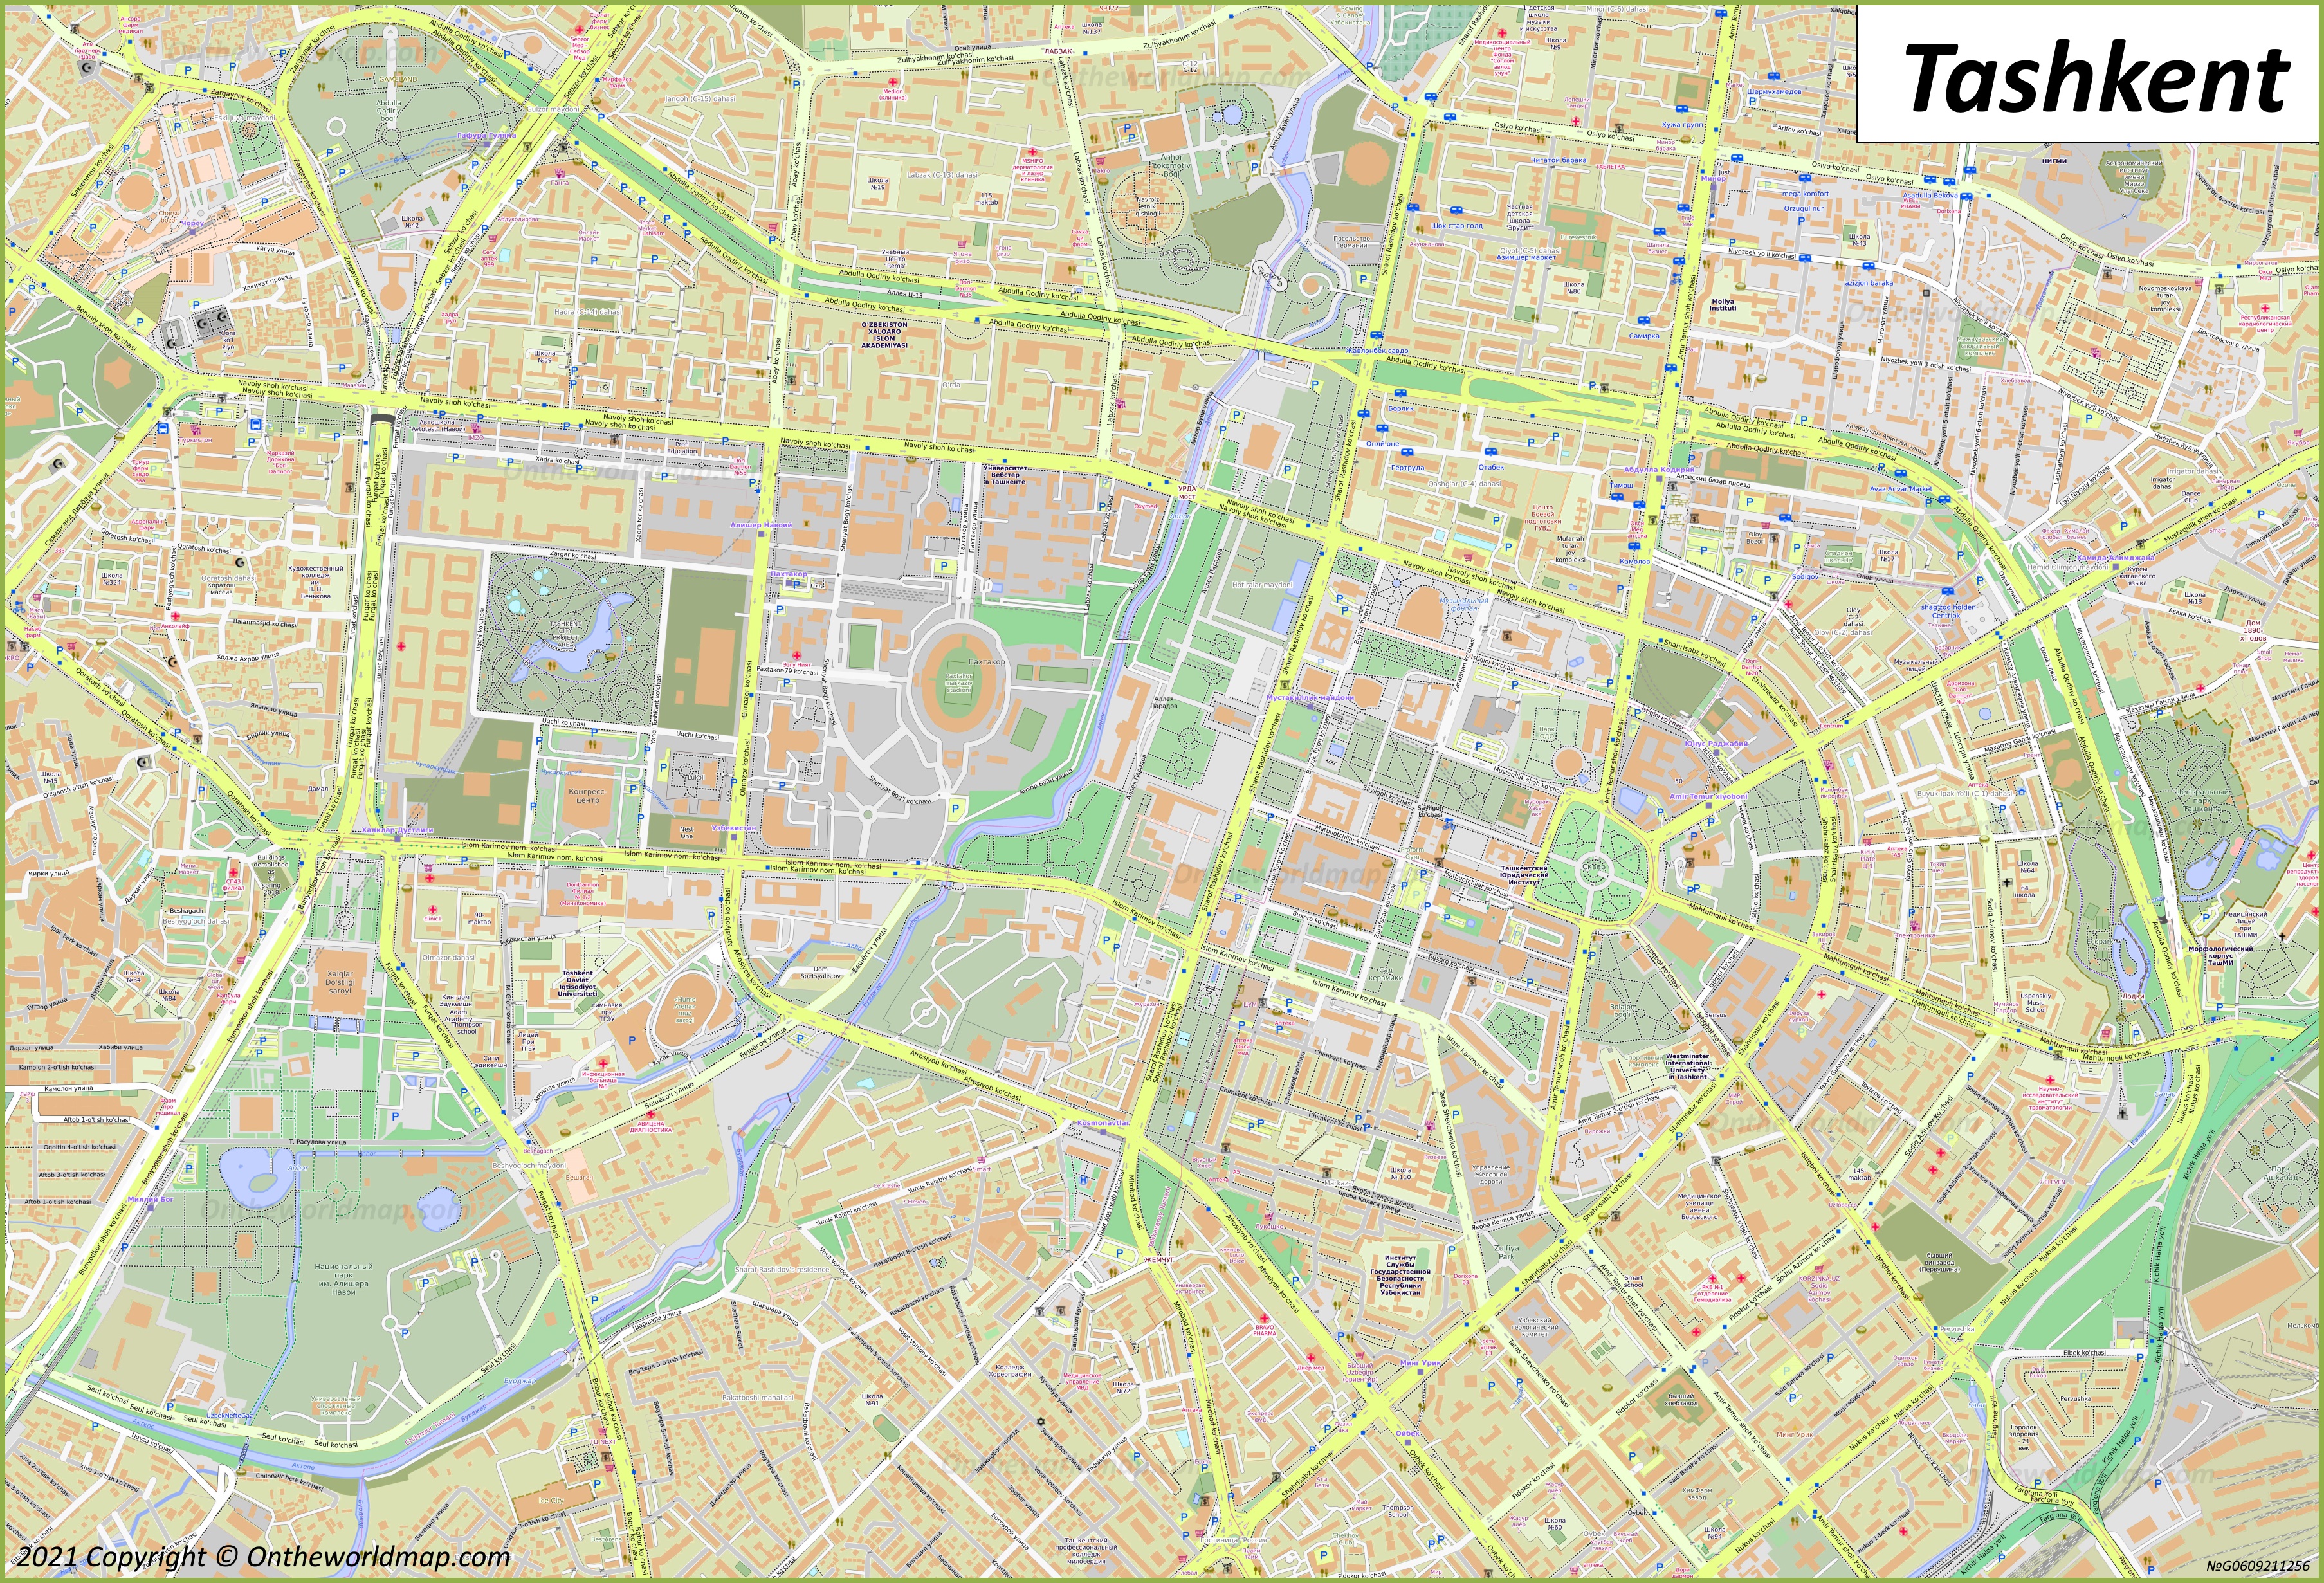 Tashkent City Center Map